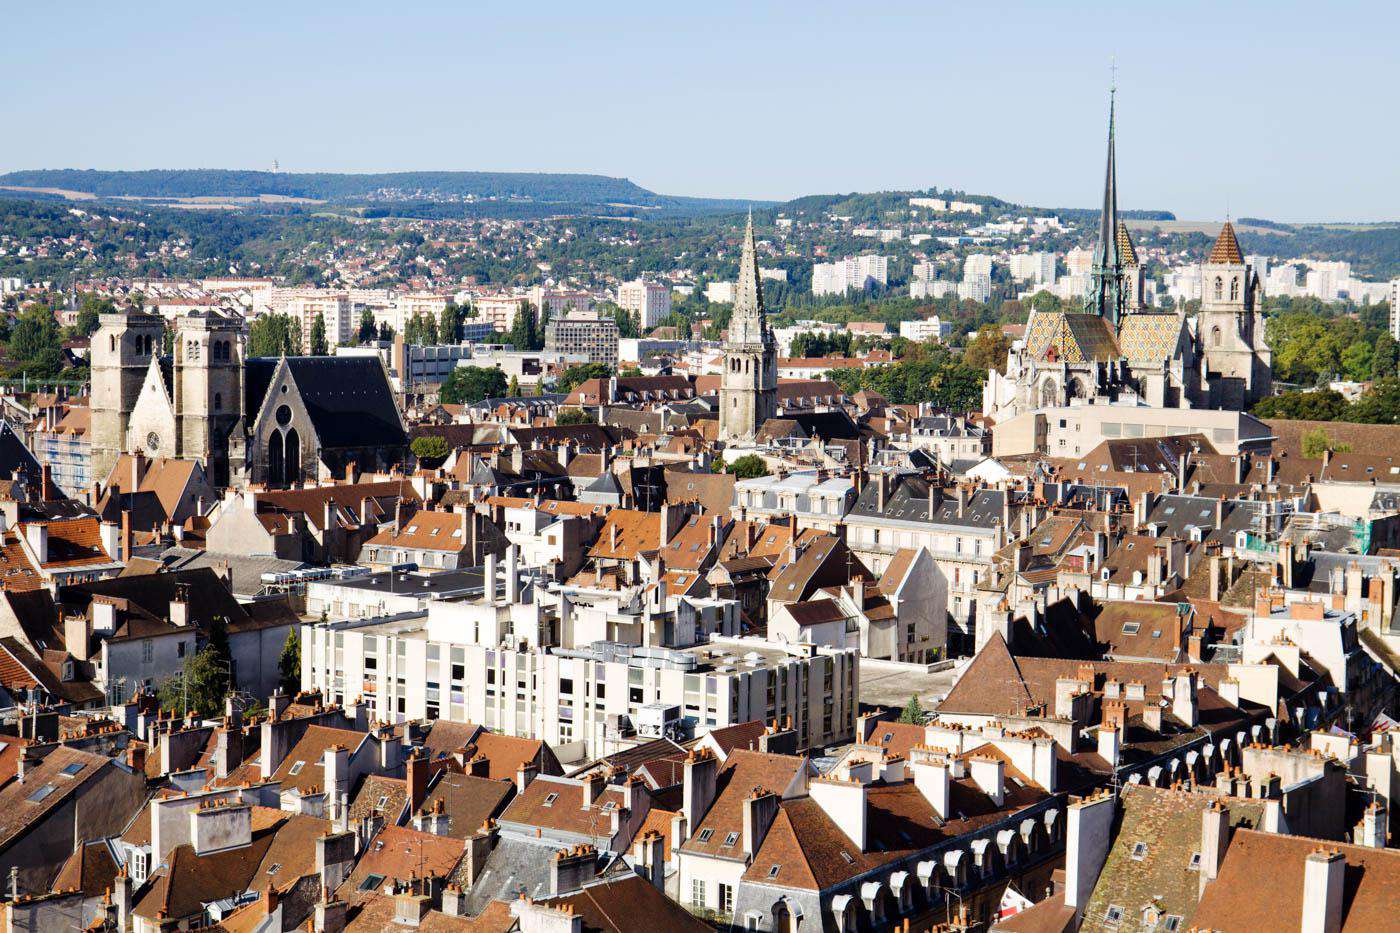 Dijon, France